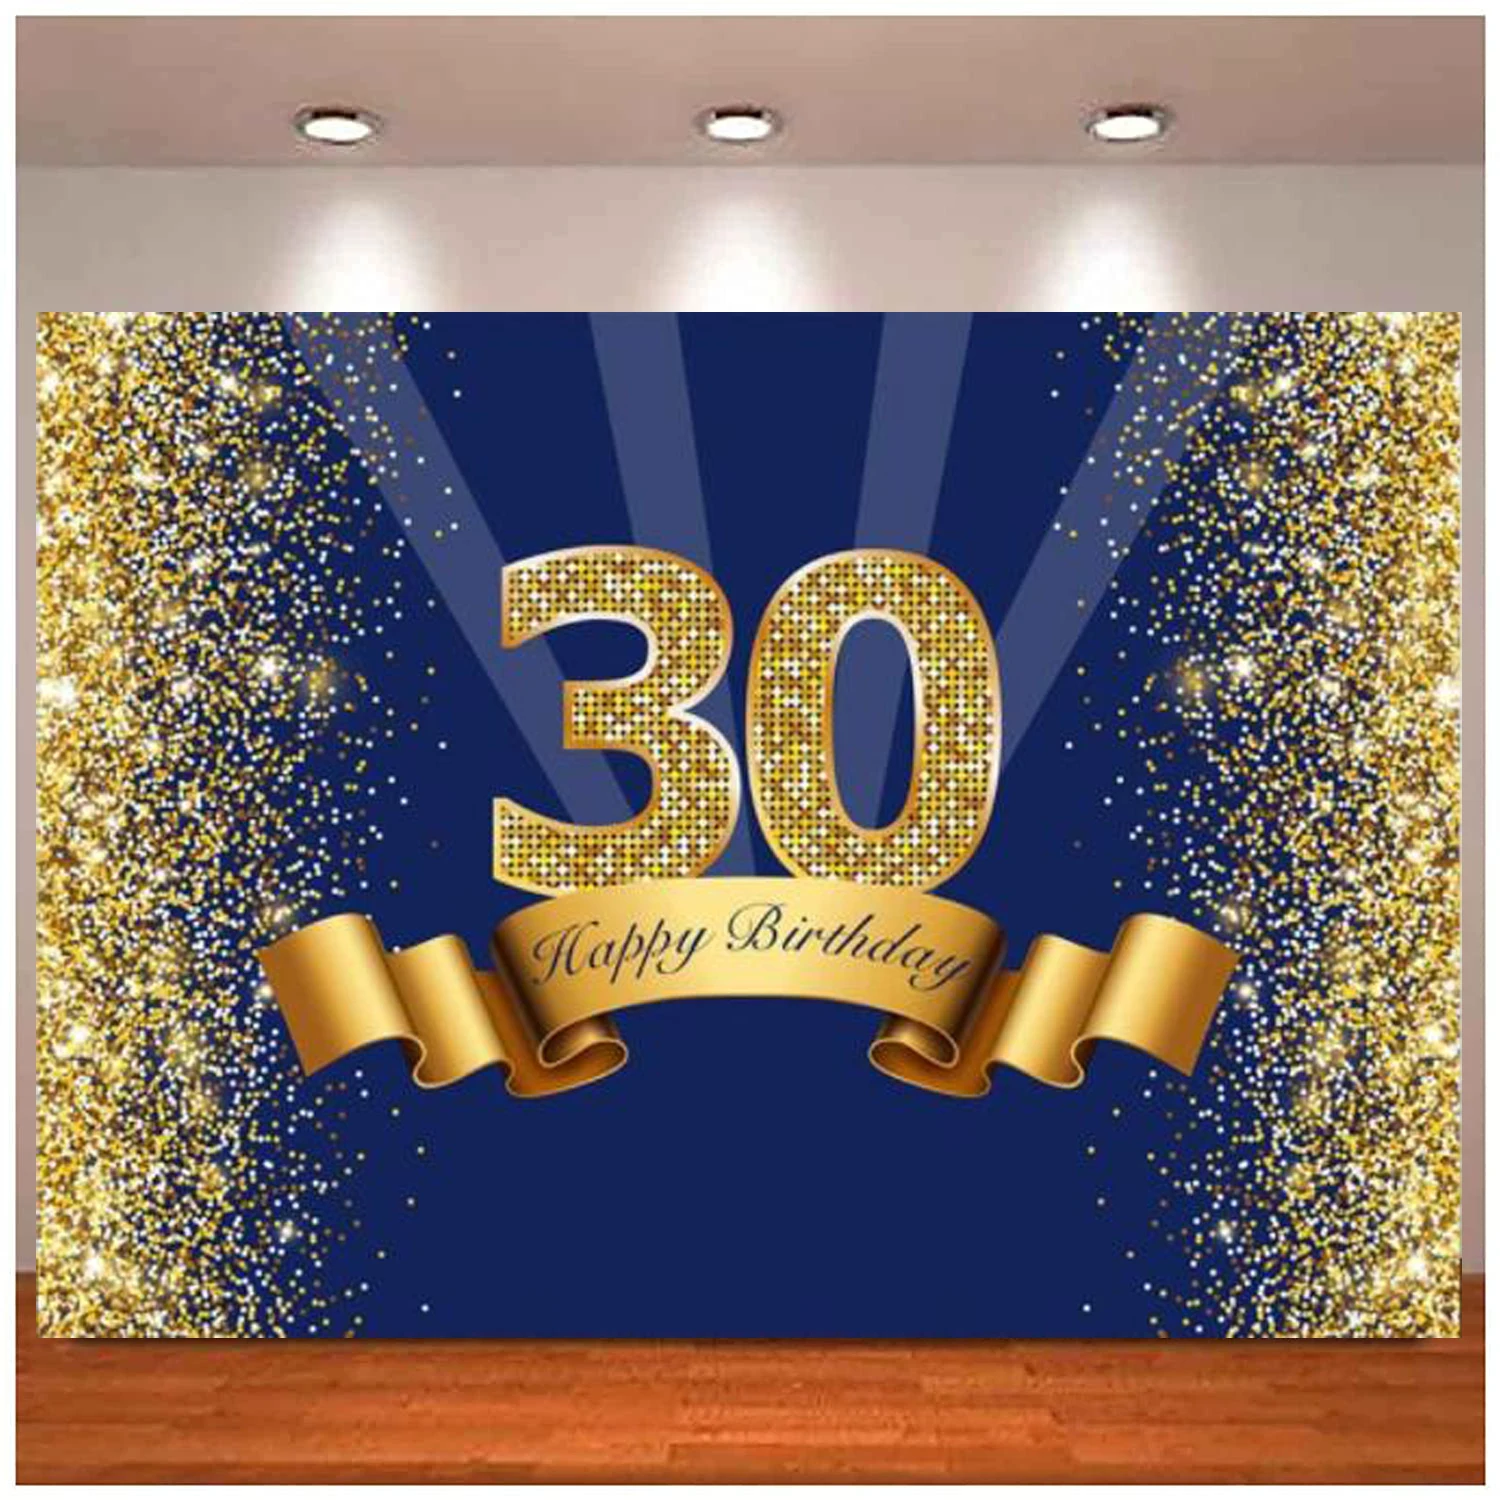 

Фон для фотосъемки темно-синий и блестящий золотой фон для фотосъемки с изображением тридцати лет блестящие украшения для вечеринки в честь Дня Рождения для взрослых и мужчин 30